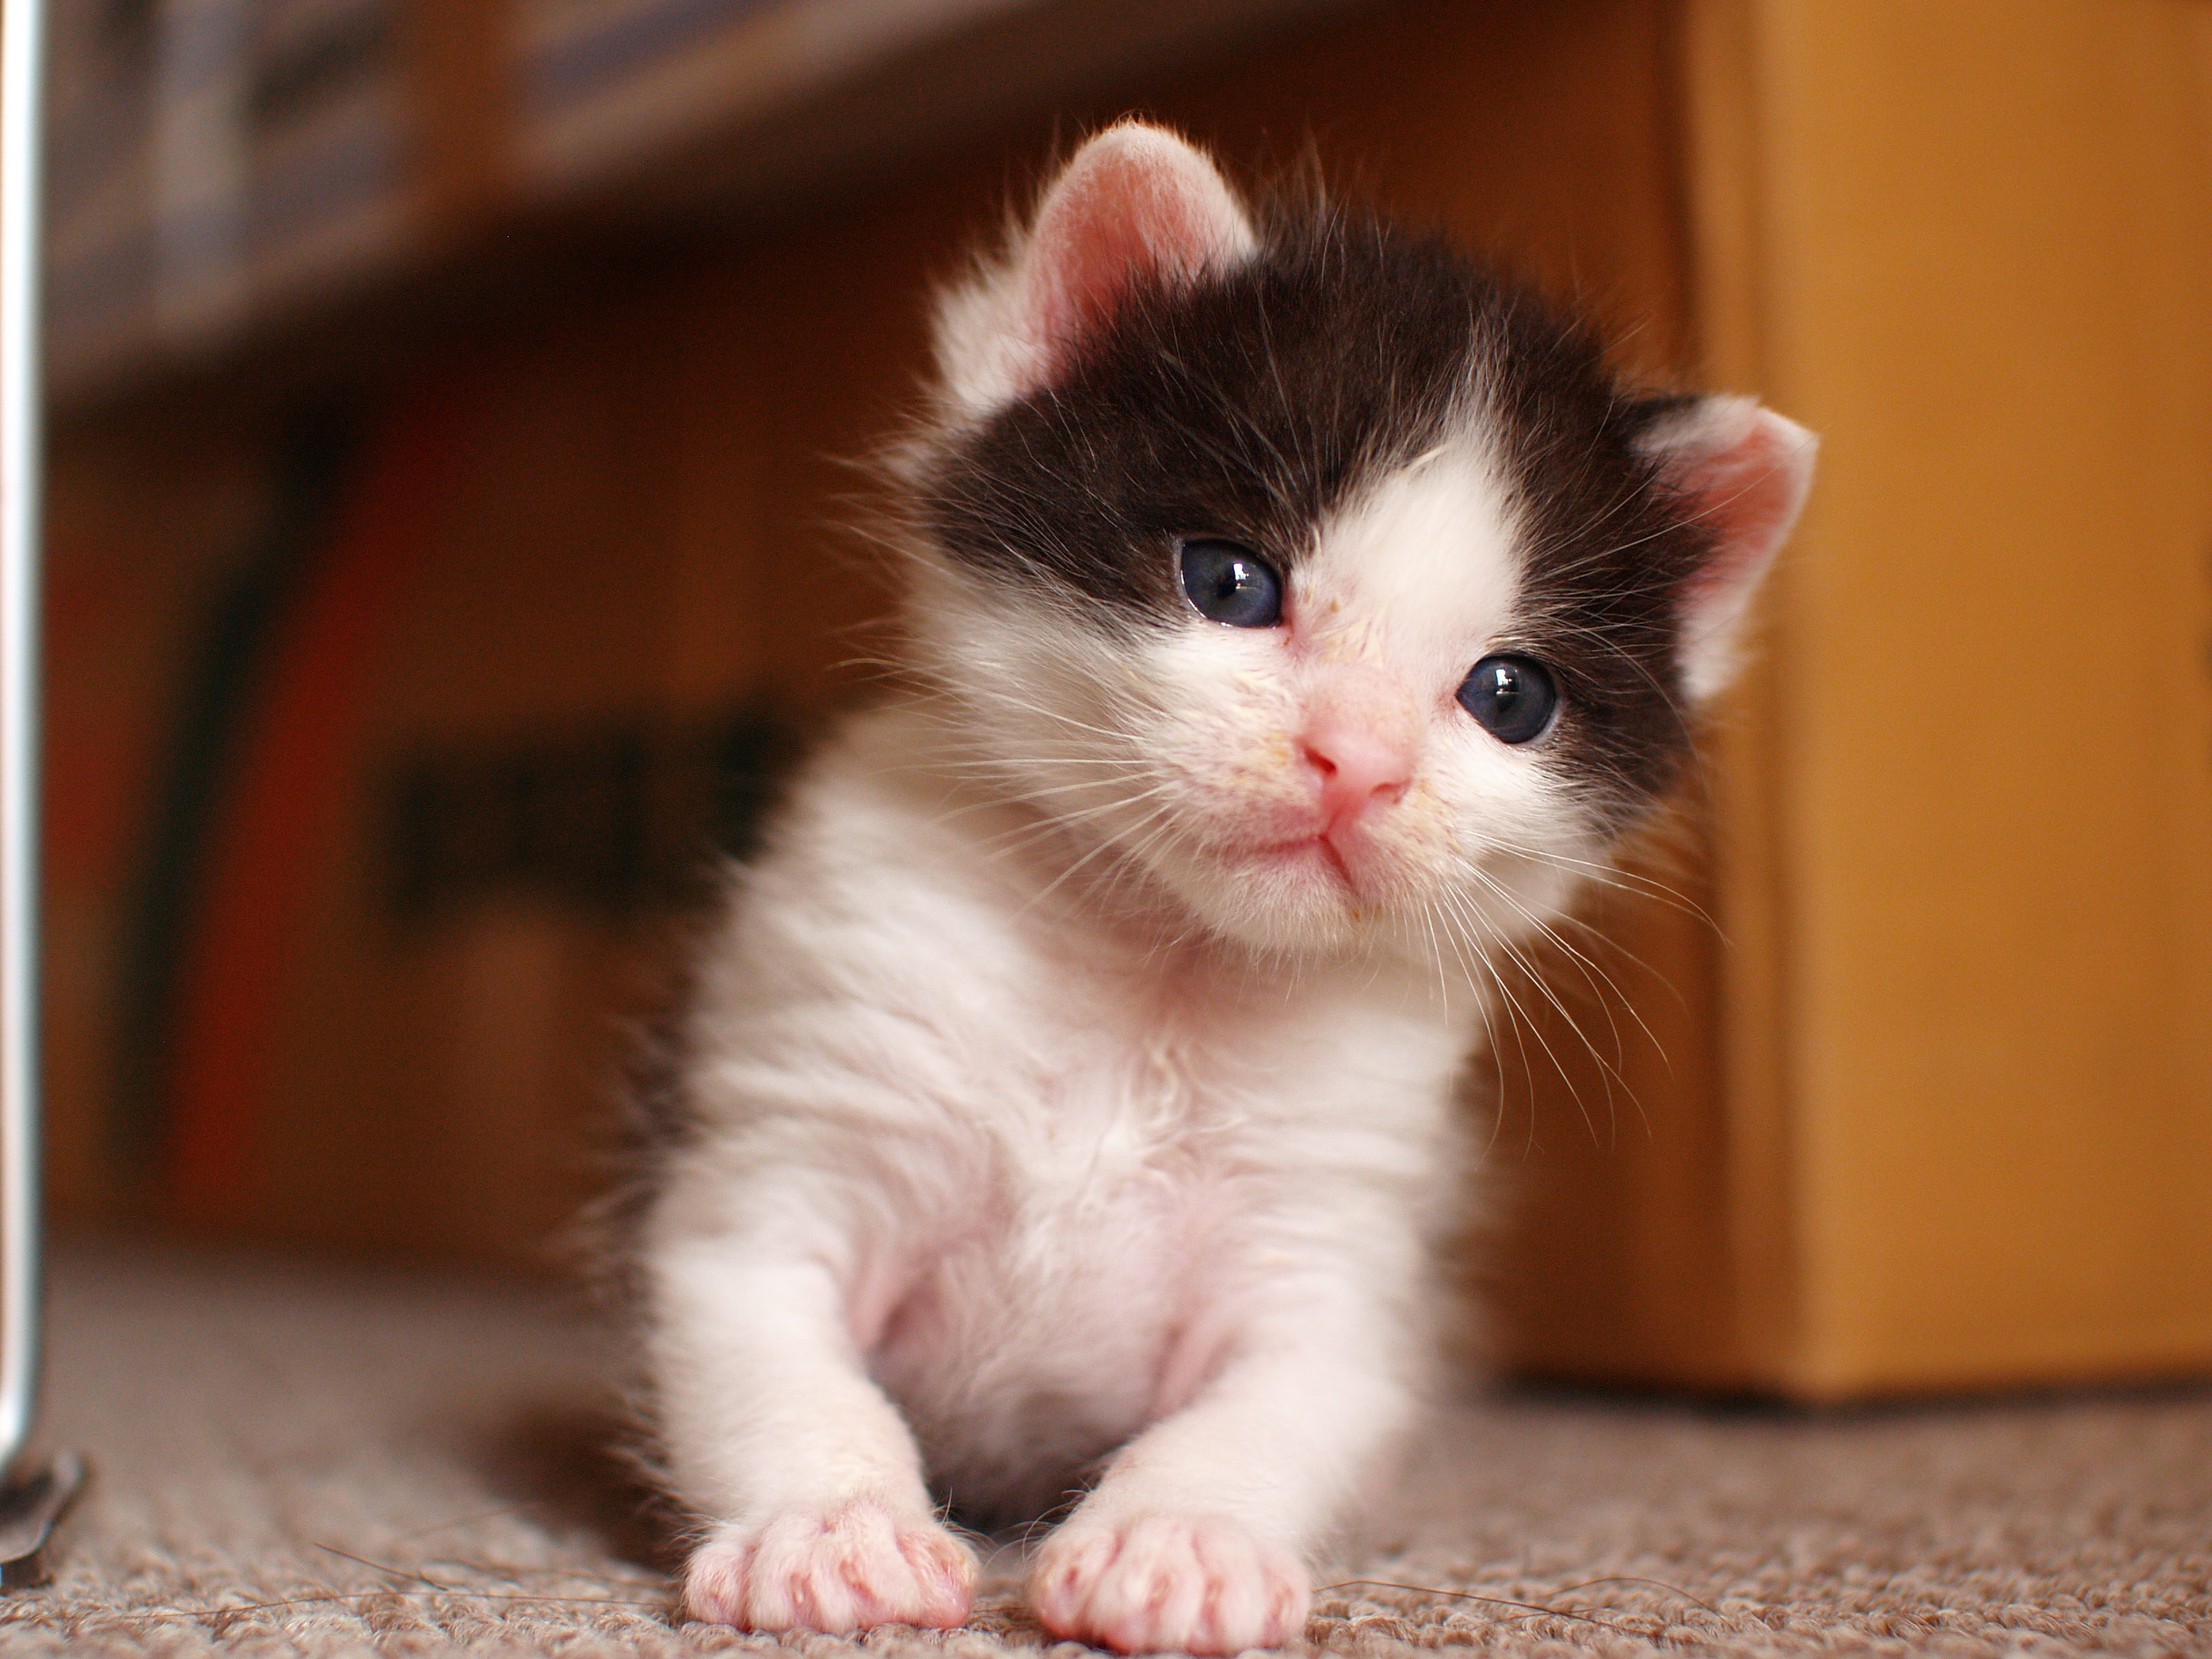 フリー画像 動物写真 哺乳類 ネコ科 猫 ネコ 子猫 超癒し系 かわいい動物の赤ちゃん画像 Naver まとめ